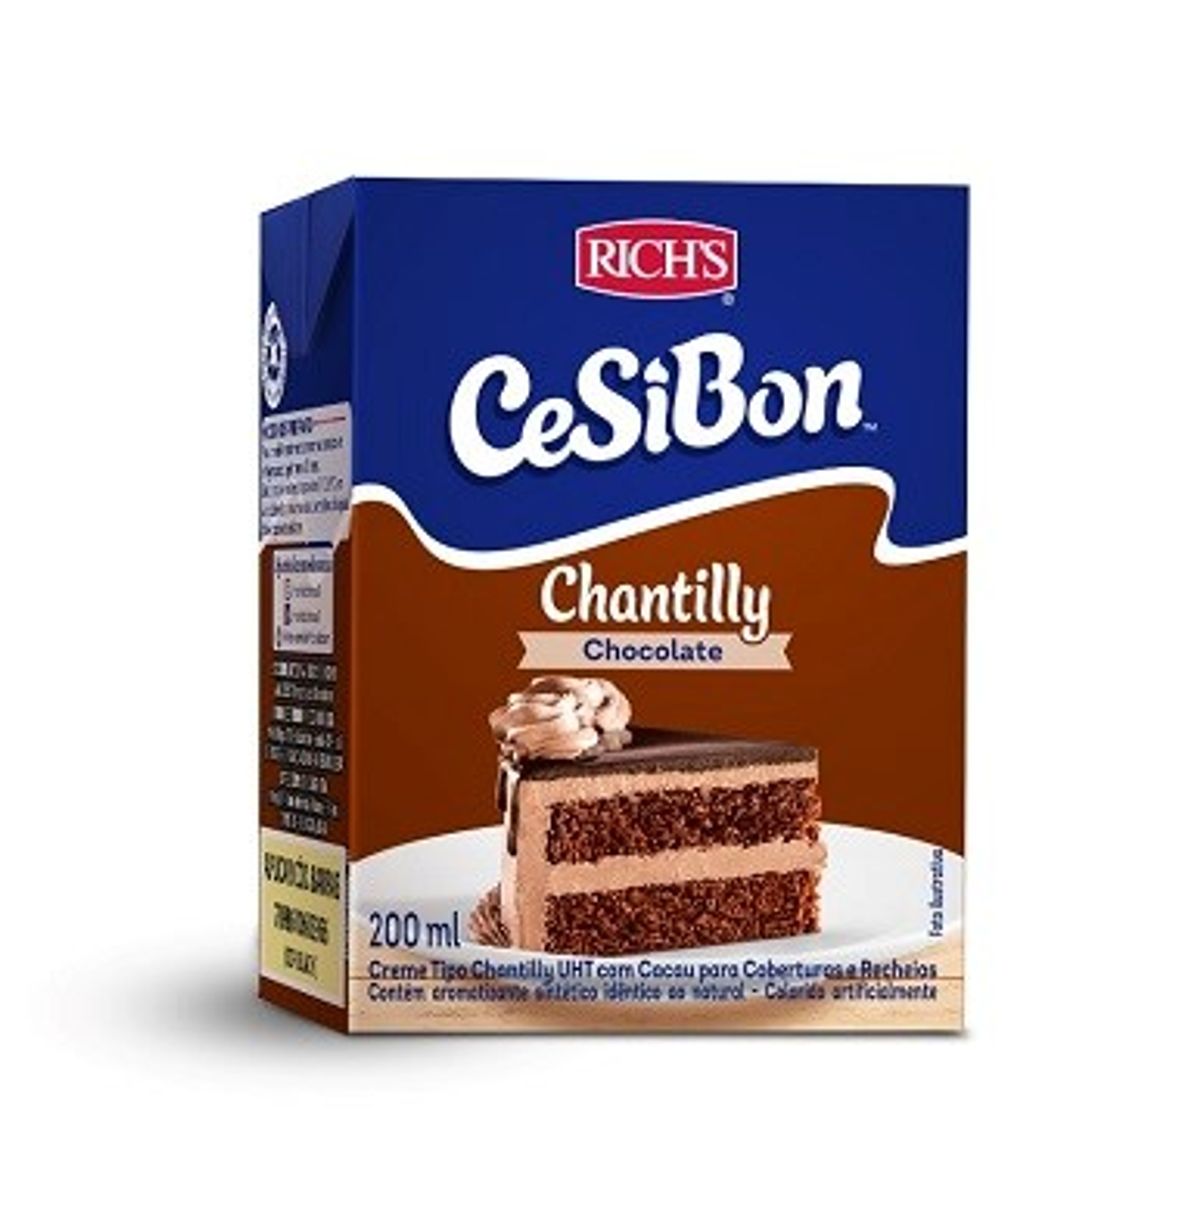 Chantilly Cesibon Chocolate 200ml